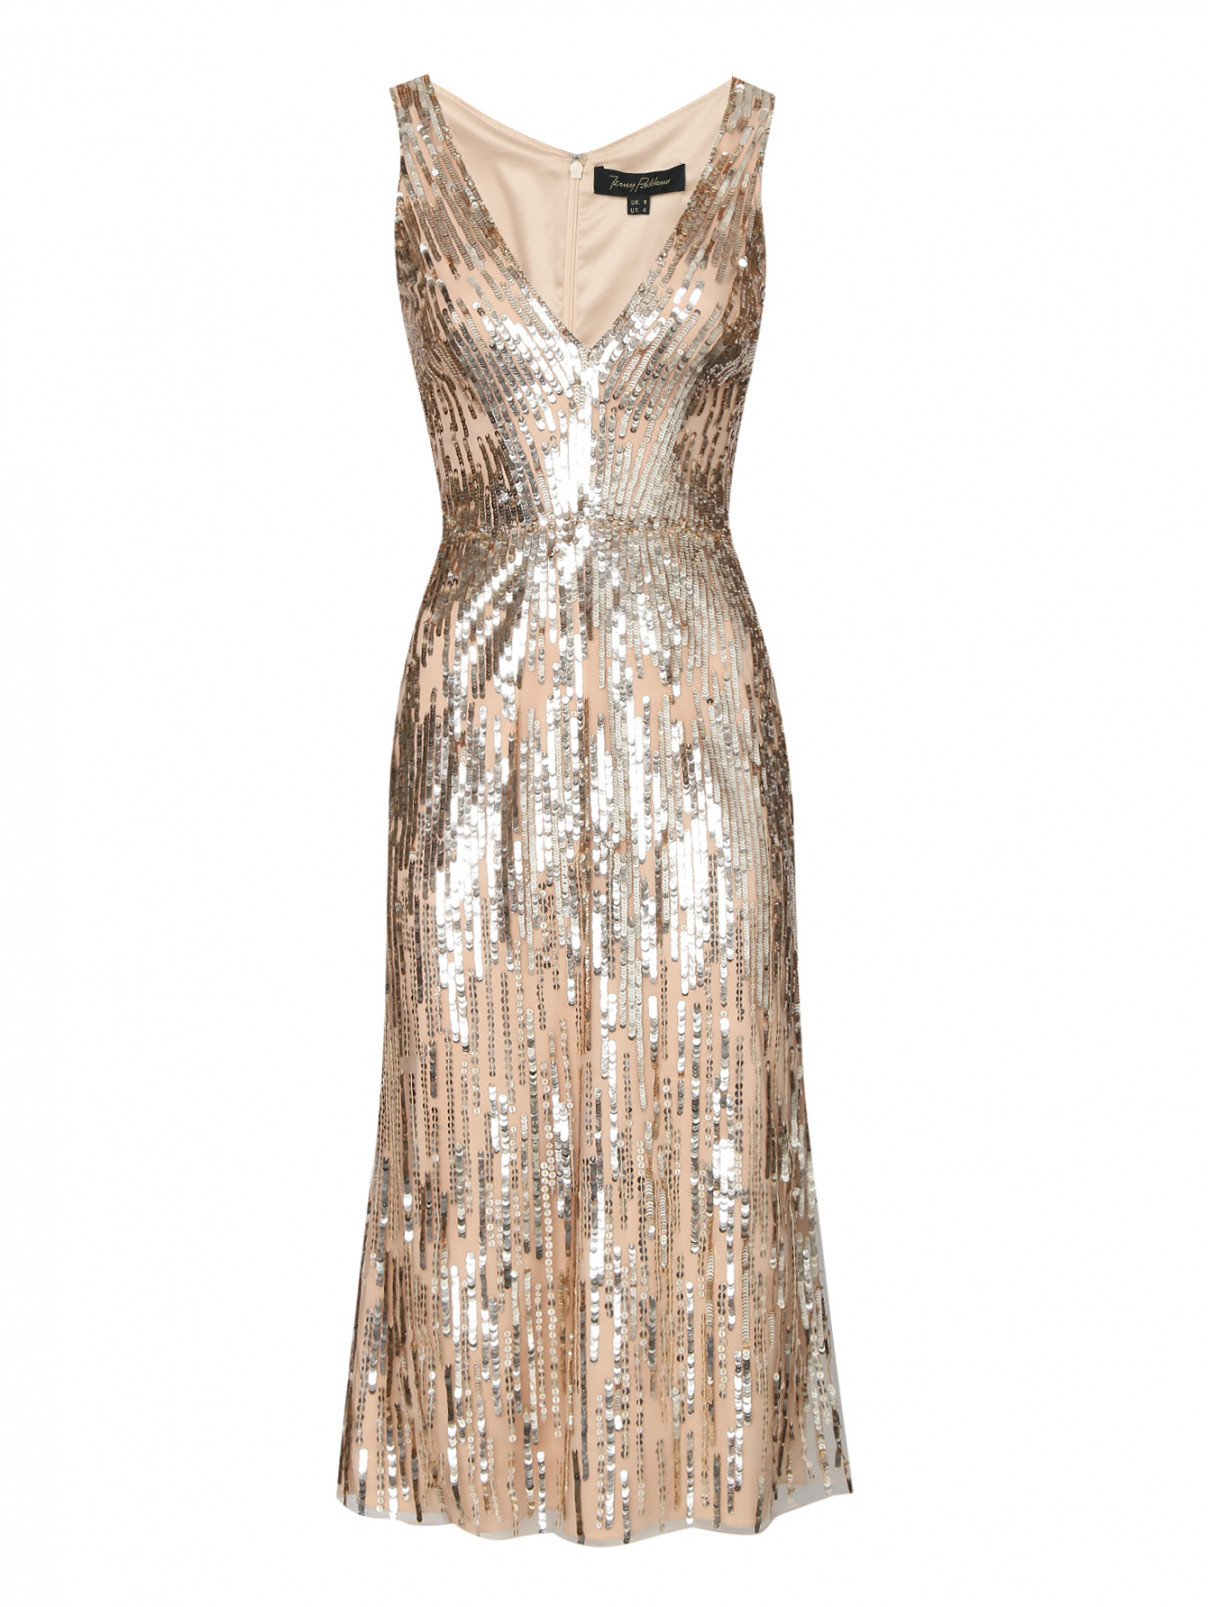 Платье в пайетках, декорированное кристаллами Jenny Packham  –  Общий вид  – Цвет:  Золотой